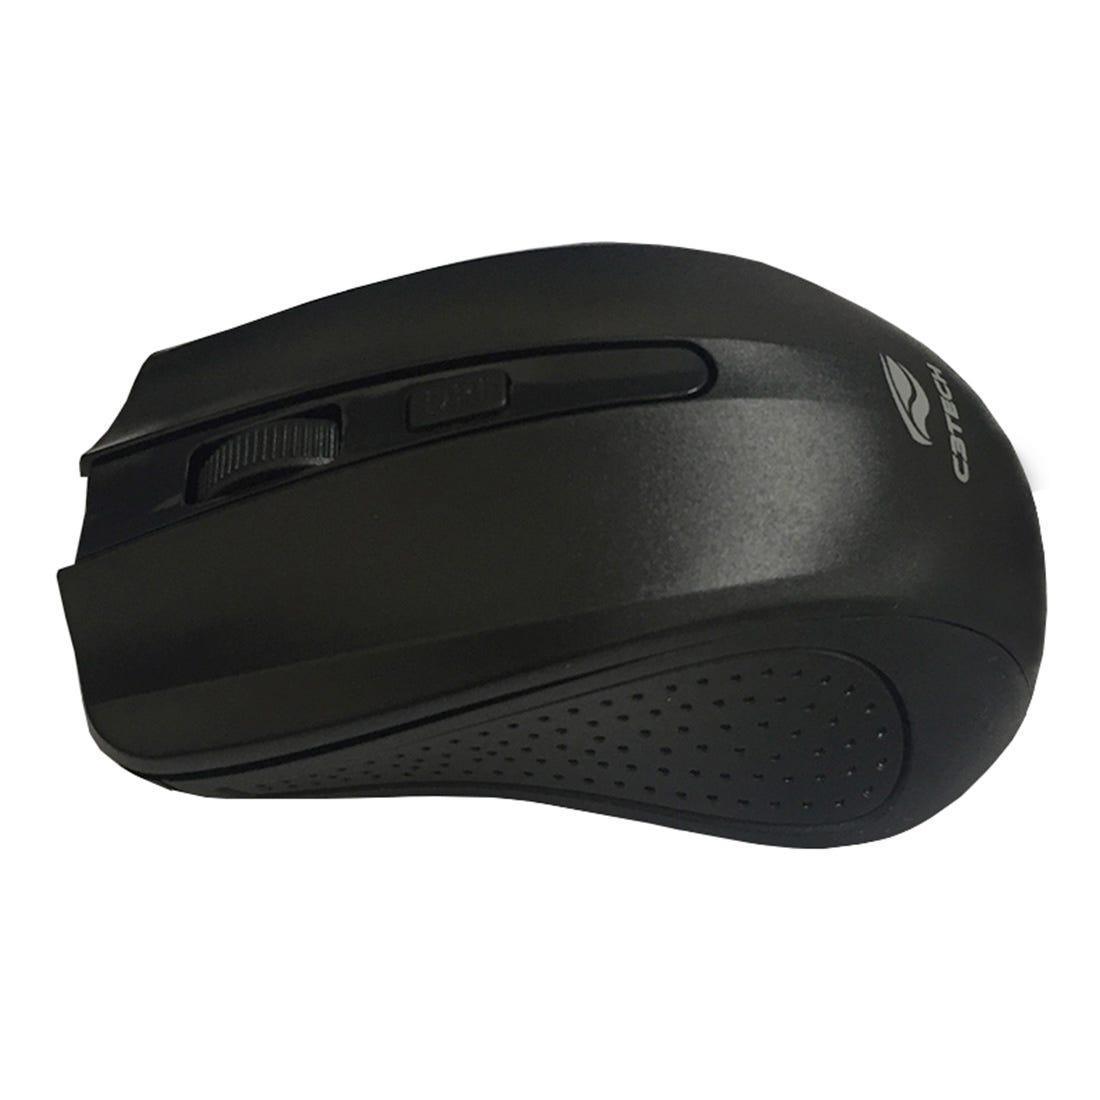 Mouse C3 Tech S/Fio RC Nano Black M-W20BK - Mega Market